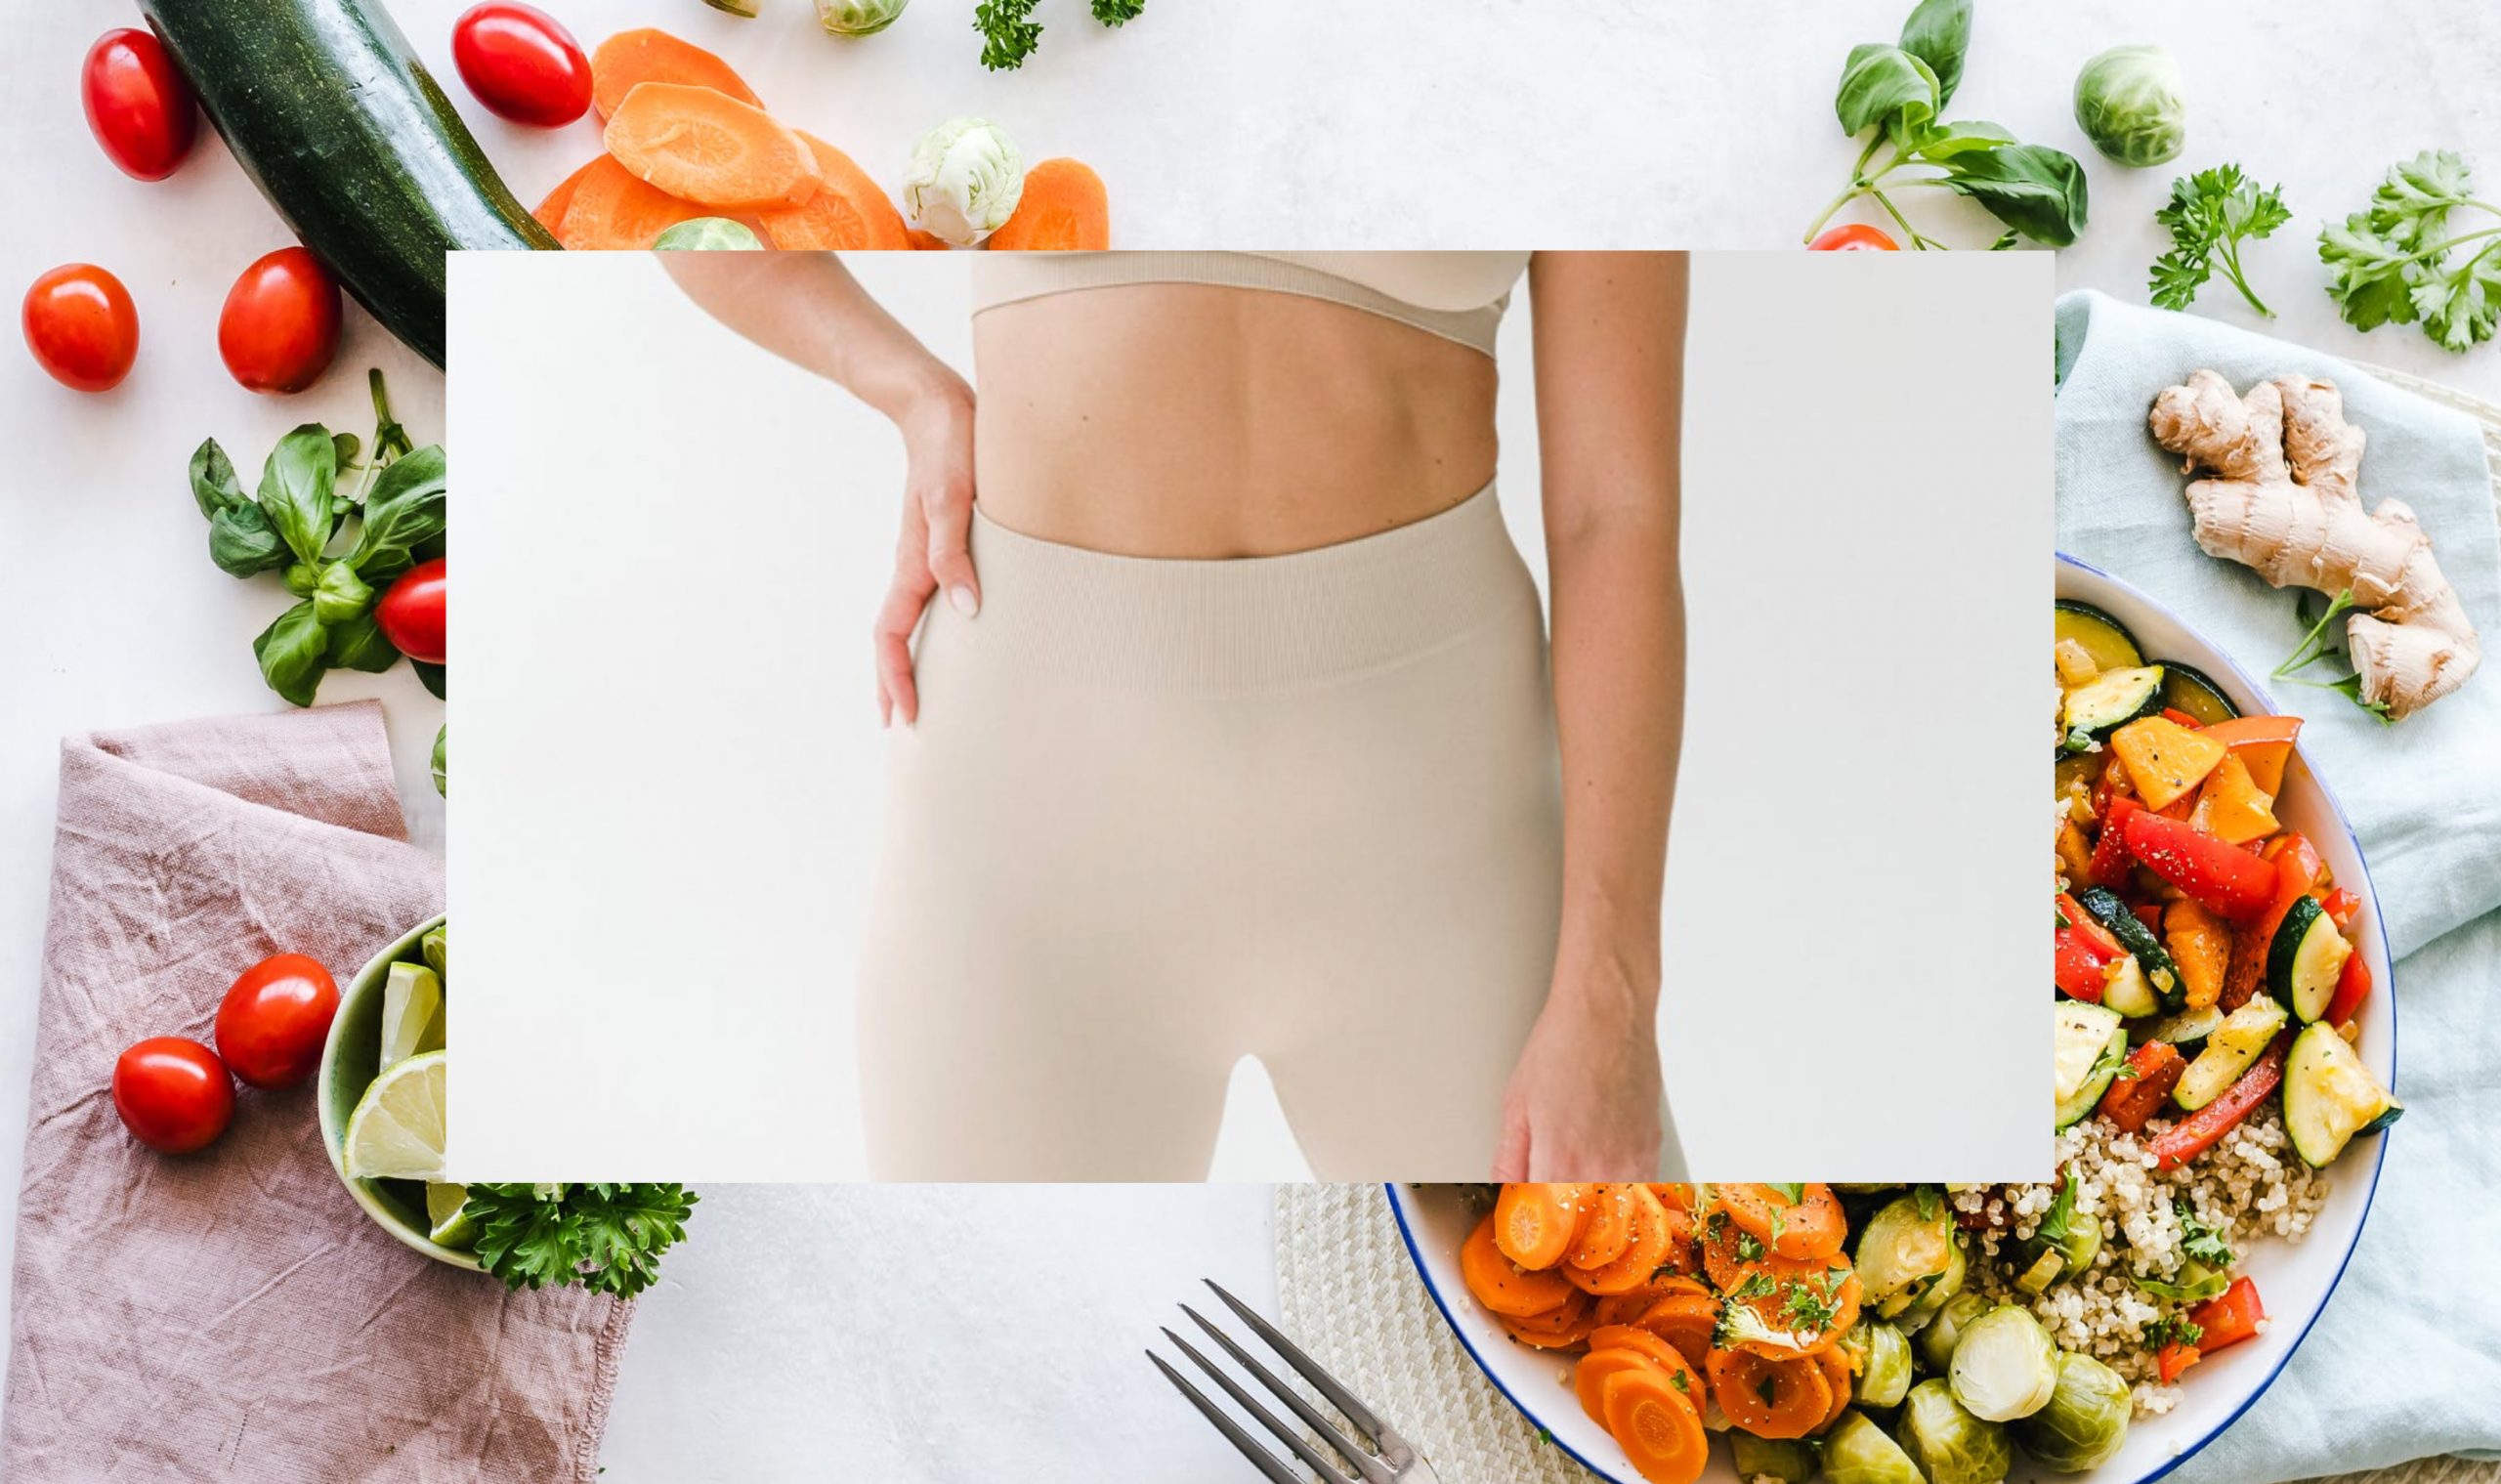 Dieta & Retete pentru slabit burta | Cum obții un abdomen plat?